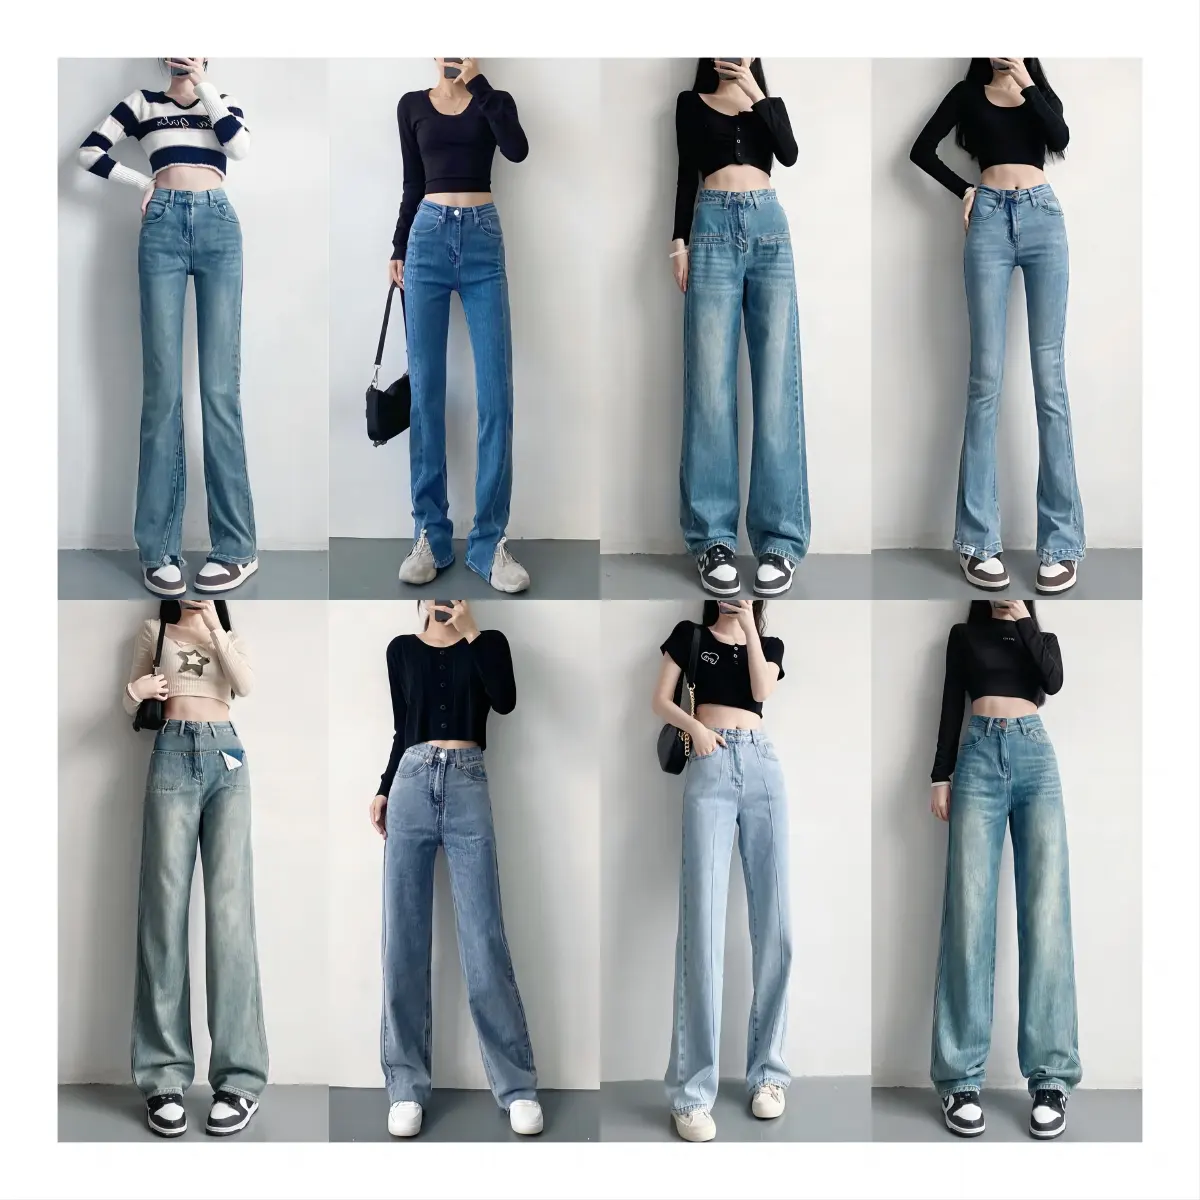 Atacado Nova Moda Plus Size Jeans Botão Denim Casual Calças de Cintura Alta Quesada Calças Jeans Das Mulheres